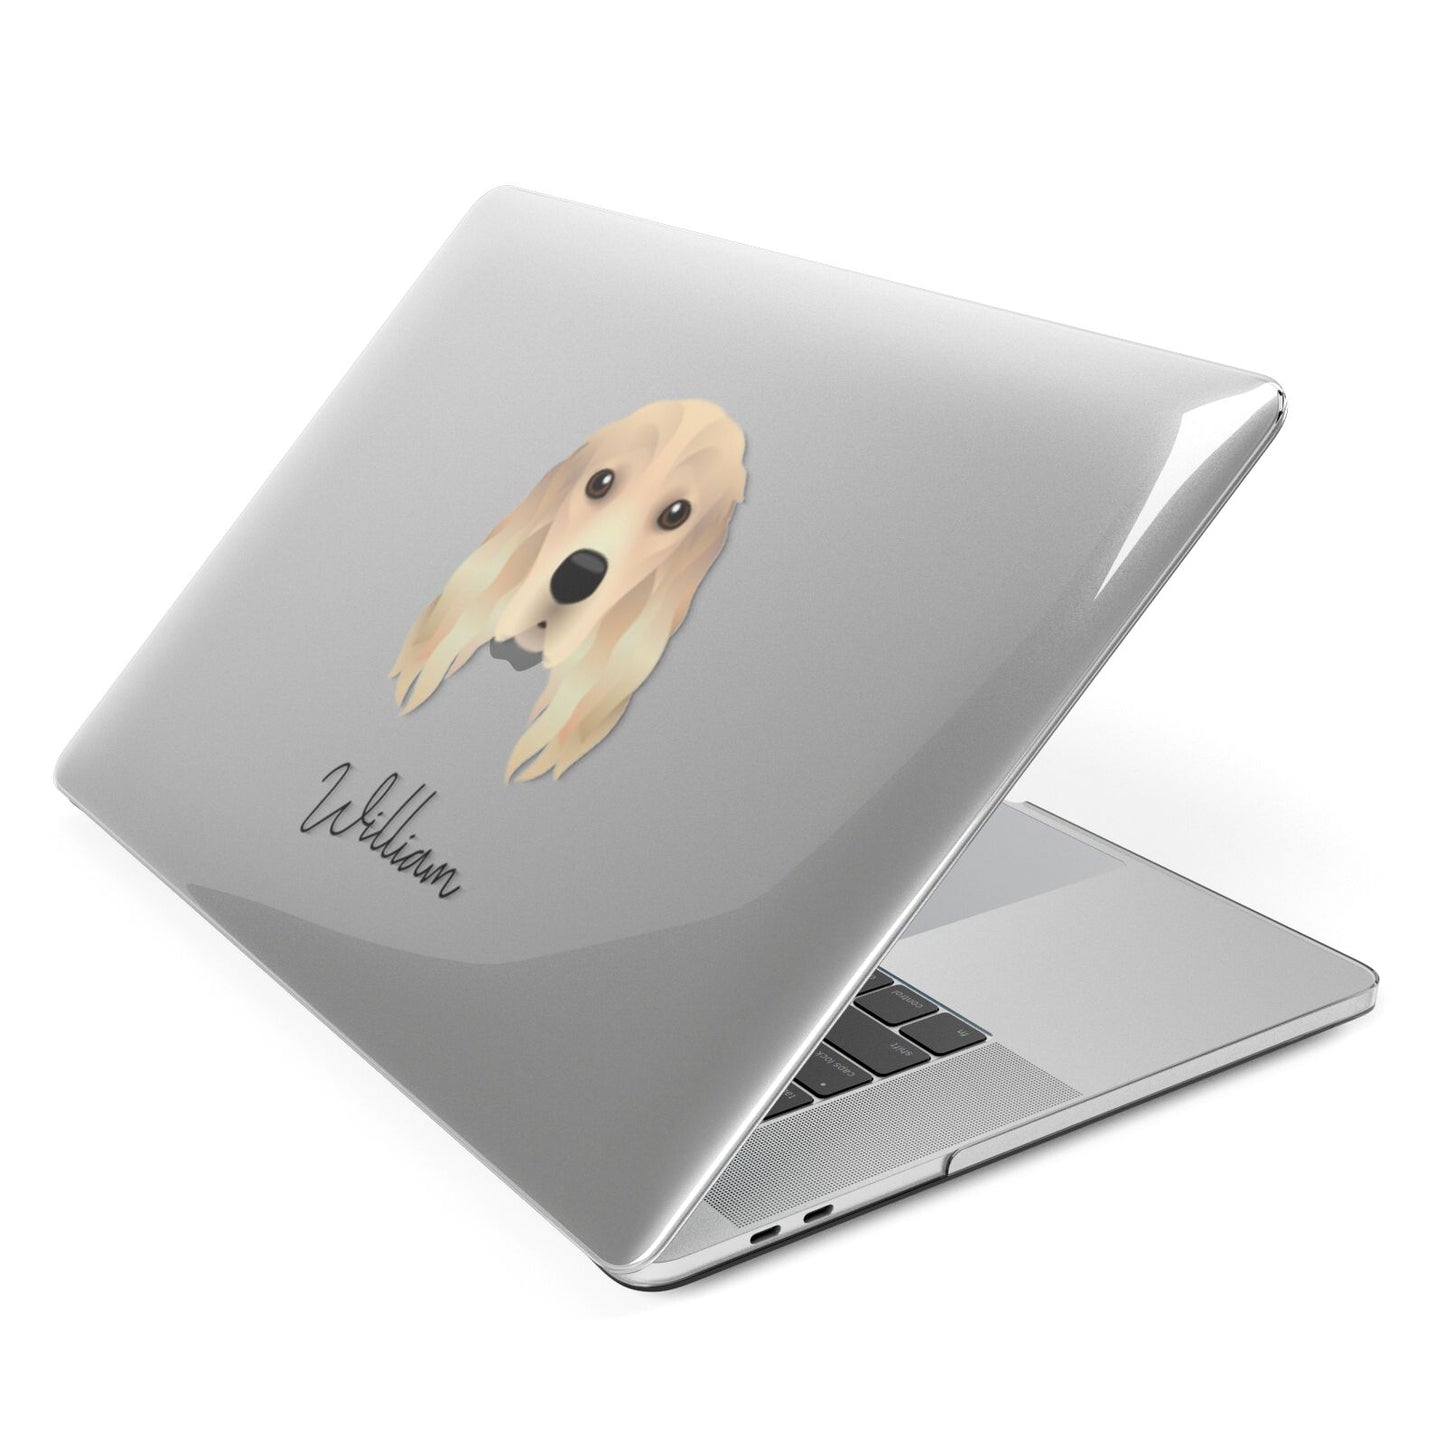 Cocker Spaniel Personalised Apple MacBook Case Side View